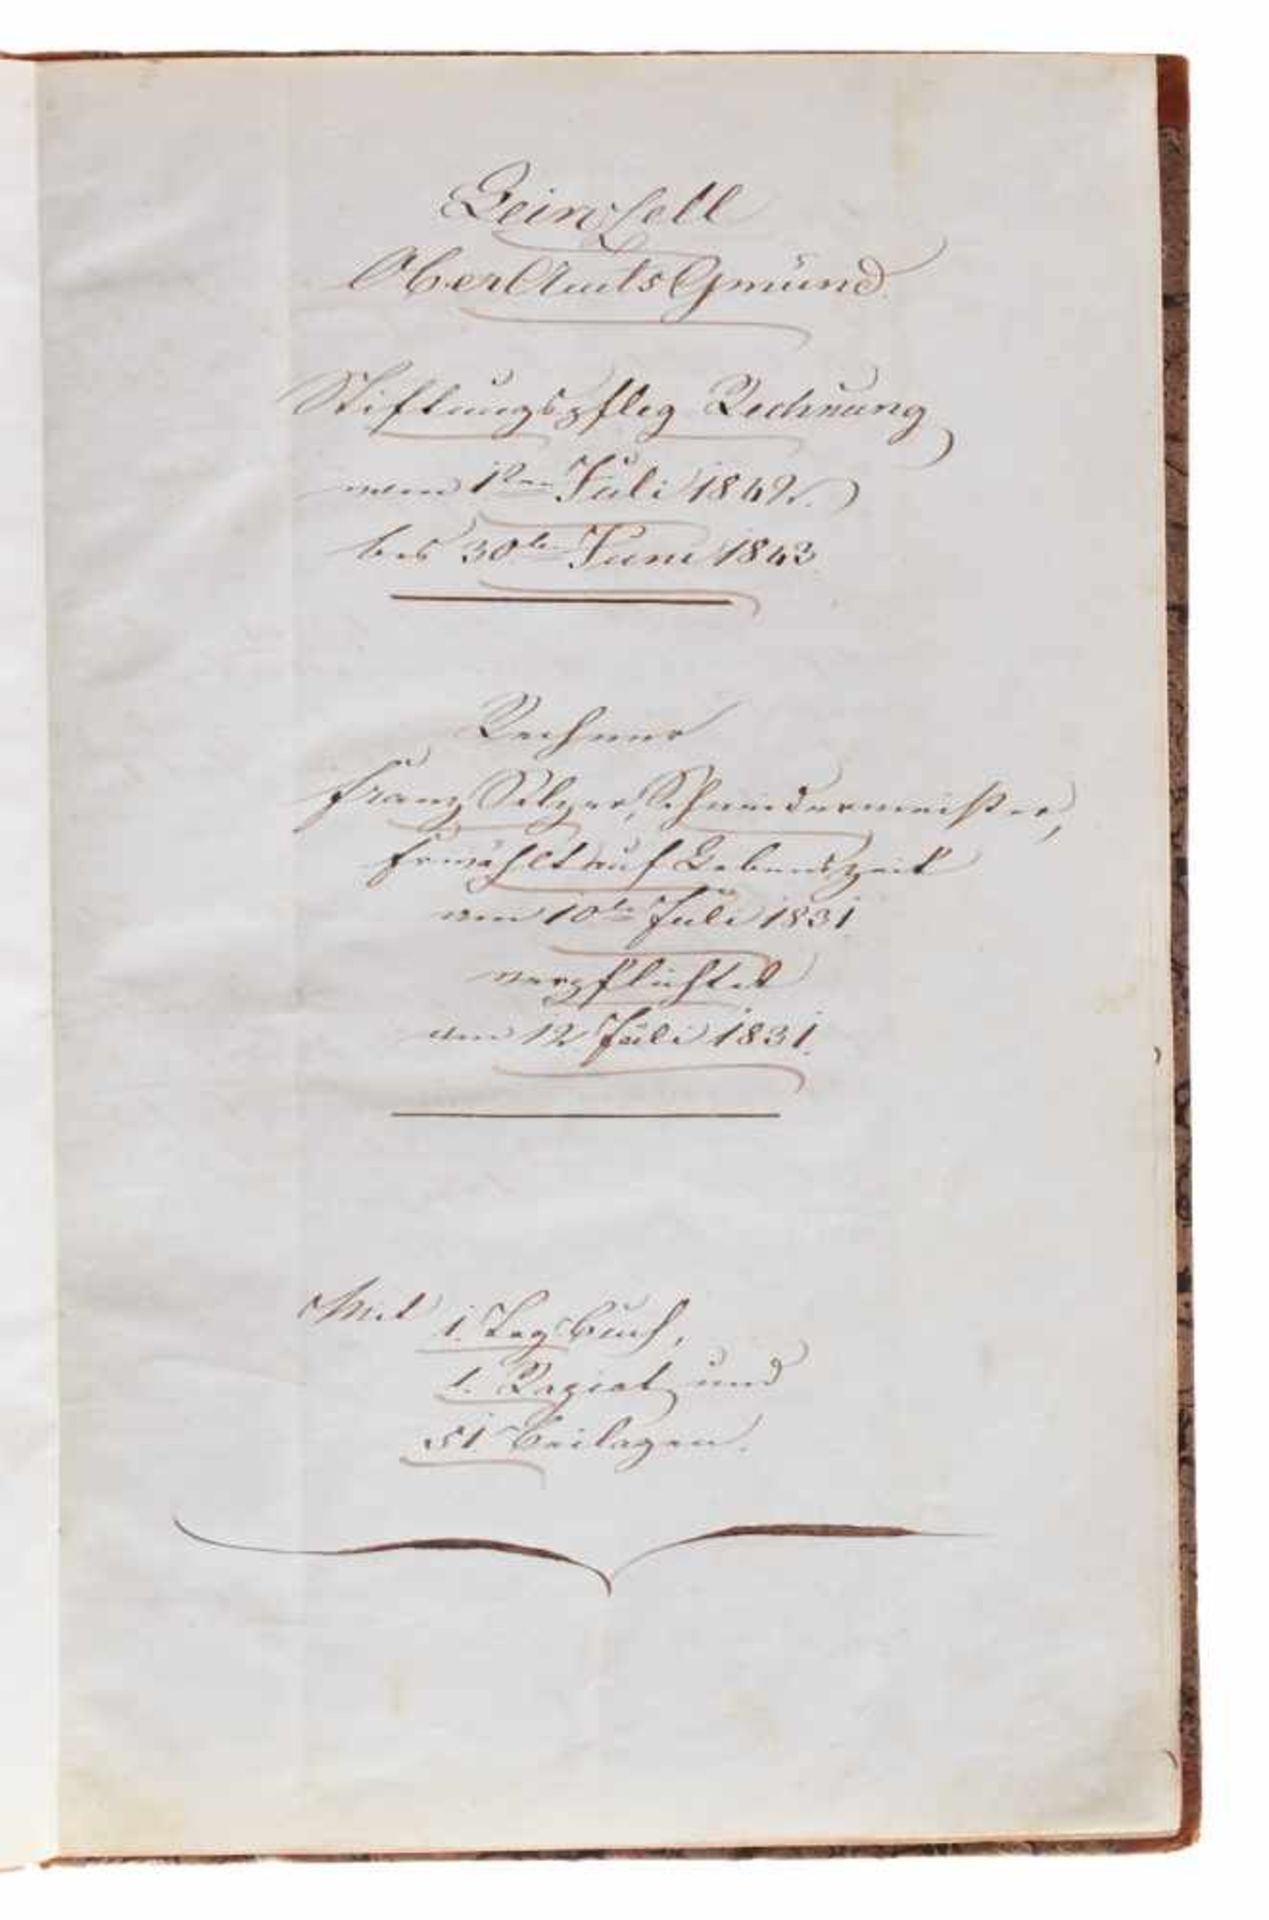 Leinzell "Stiftungspfleeg-Rechnung" (Deckeltitel).Deutsche Handschrift auf Papier. Dat. Leinzell ( - Bild 2 aus 2